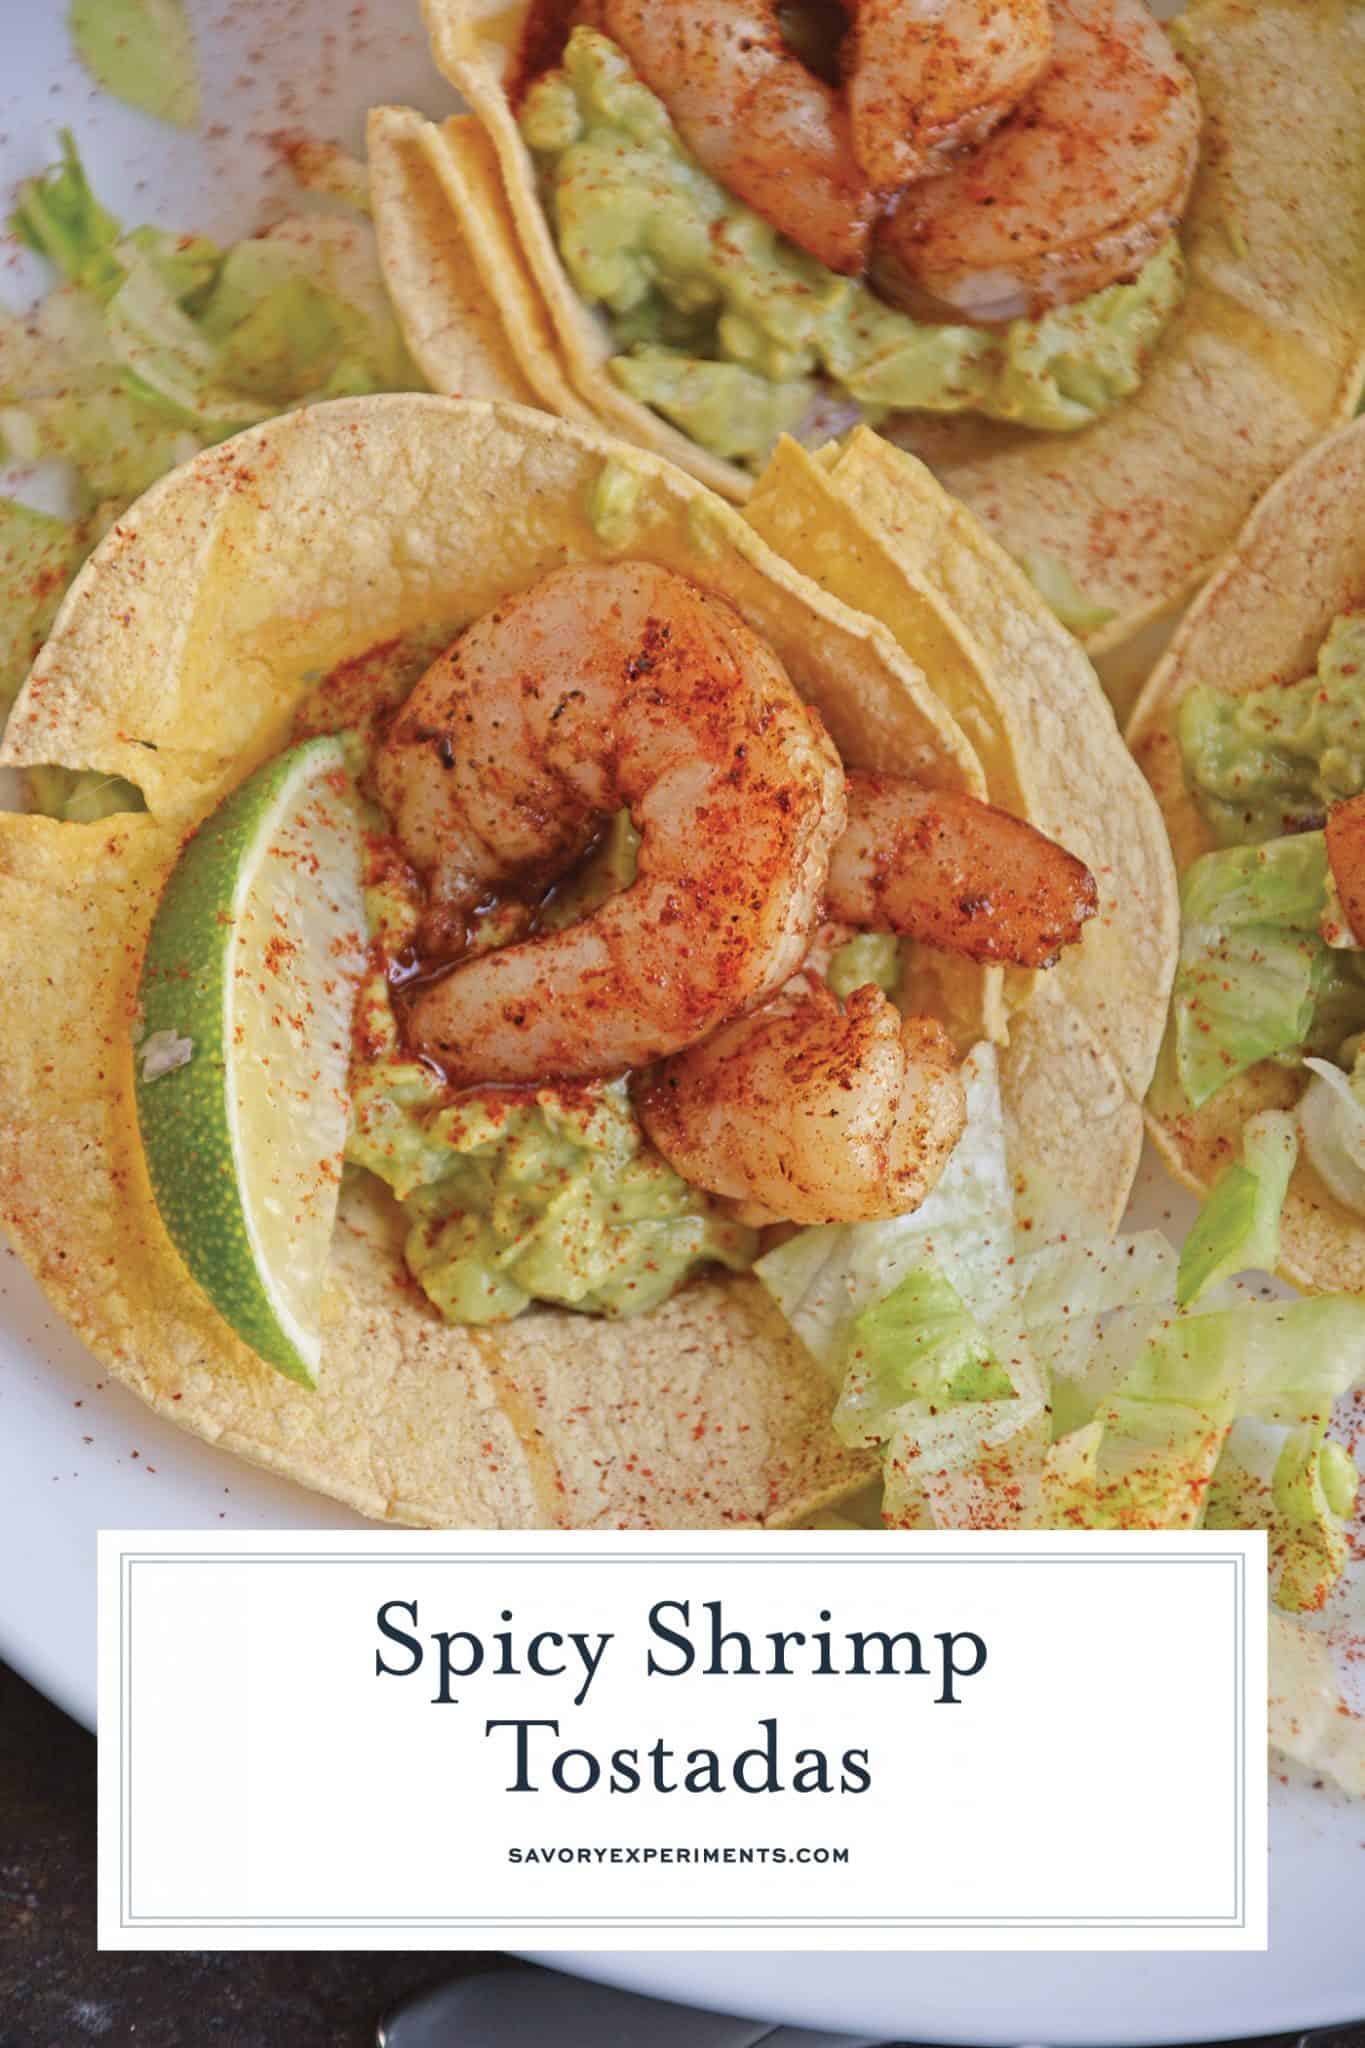 Shrimp Tostadas Recipe - A Spicy Mexican Shrimp Recipe